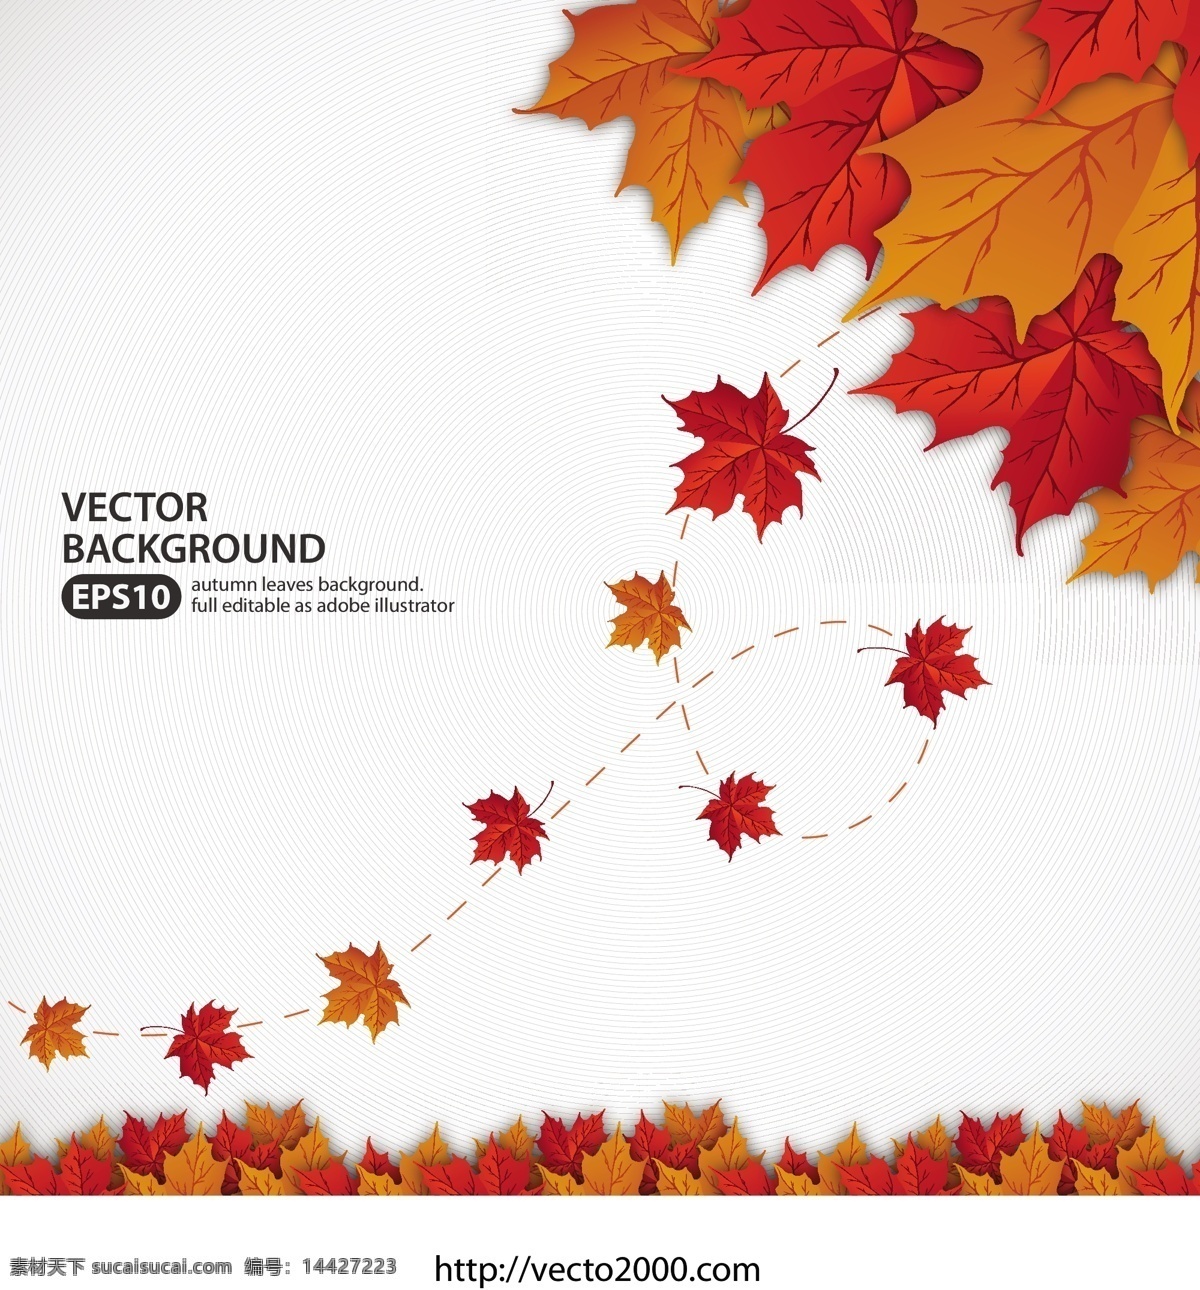 充满 活力 秋天 树叶 矢量 背景 web 插画 橙 创意 枫叶 高分辨率 免费 病 媒 生物 时尚 独特的 质量 新鲜的 设计设计新的 ui元素 hd 秋天的叶子 红色的 丰富多彩的 psd源文件